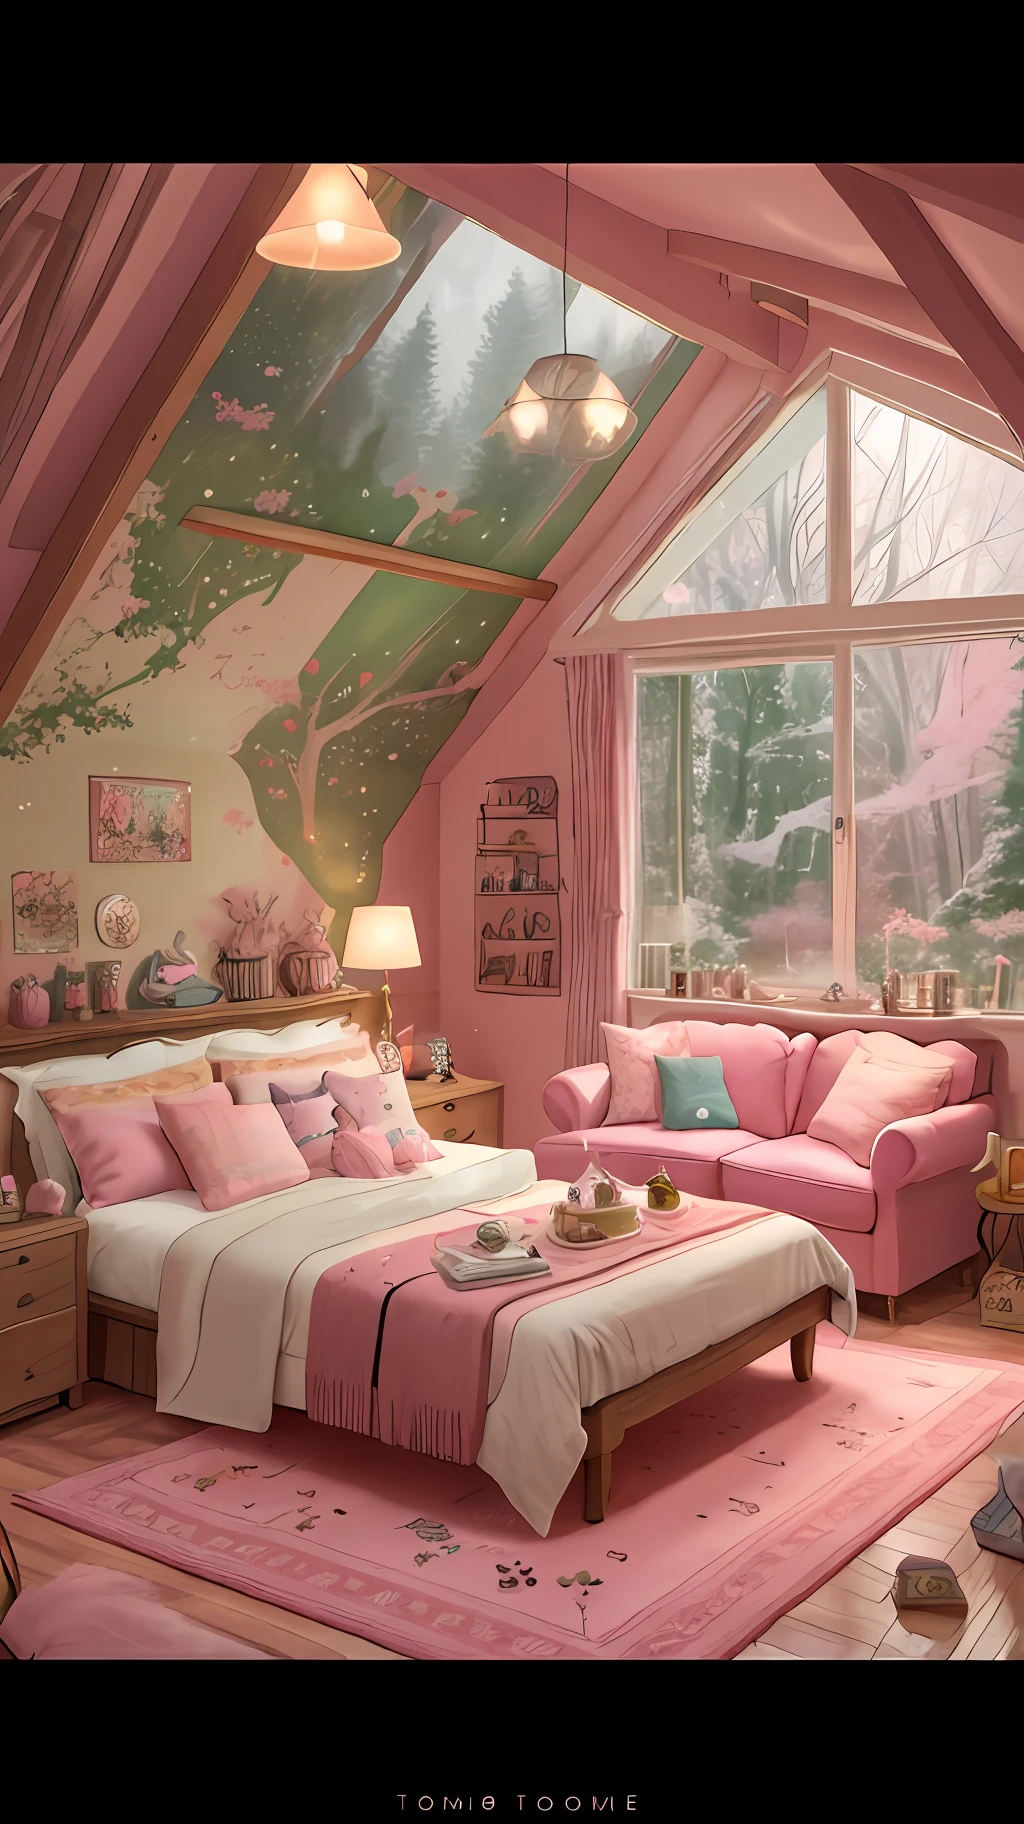 有粉色地毯和粉色沙发的 araffe 房间, 在糖果乐园风格的房子里, 明亮的粉红色房间, 梦幻美学, 舒适的美学, 舒适的地方, 托马斯·金凯德. cute 舒适的房间, 舒缓舒适的景观, 粉红森林, 乡村风格!!, 温馨家居背景, 带有柔和的粉红色, 舒适的房间, designed for 舒适的美学s!